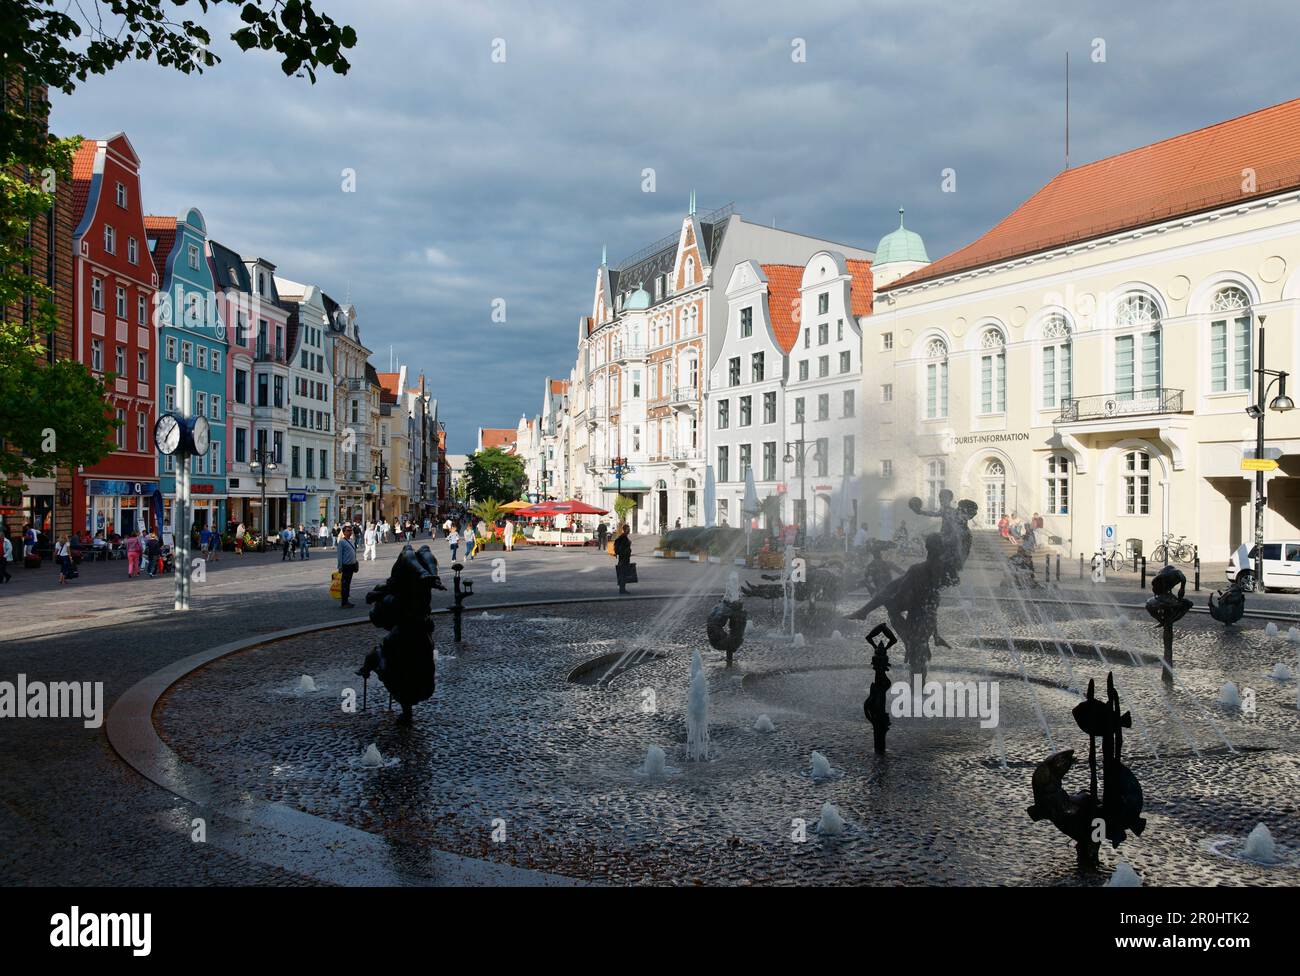 Fontana dello Zest per la vita, Piazza dell'Università, Kreopelin Street, Città anseatica di Rostock, Meclemburgo-Pomerania occidentale, Germania Foto Stock